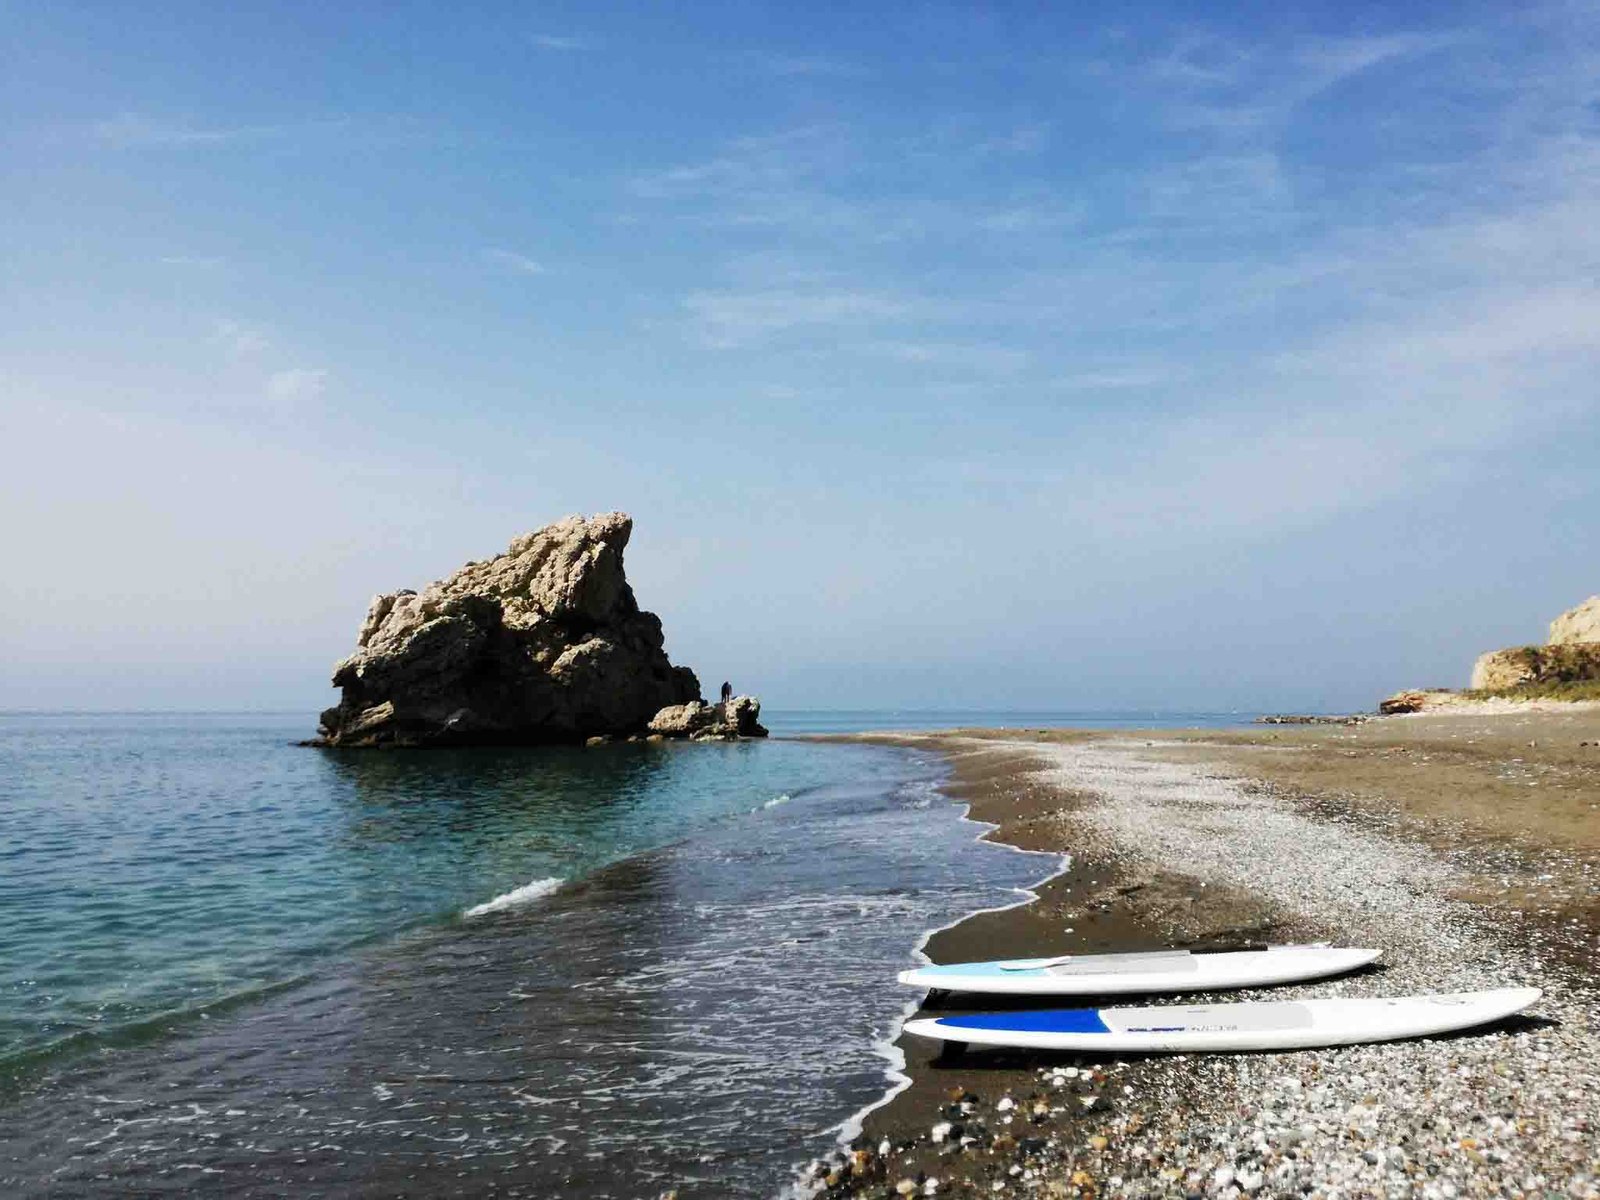 Dos tablas de Paddle Surf en la orilla en Peñon del Cuervo, Malaga.